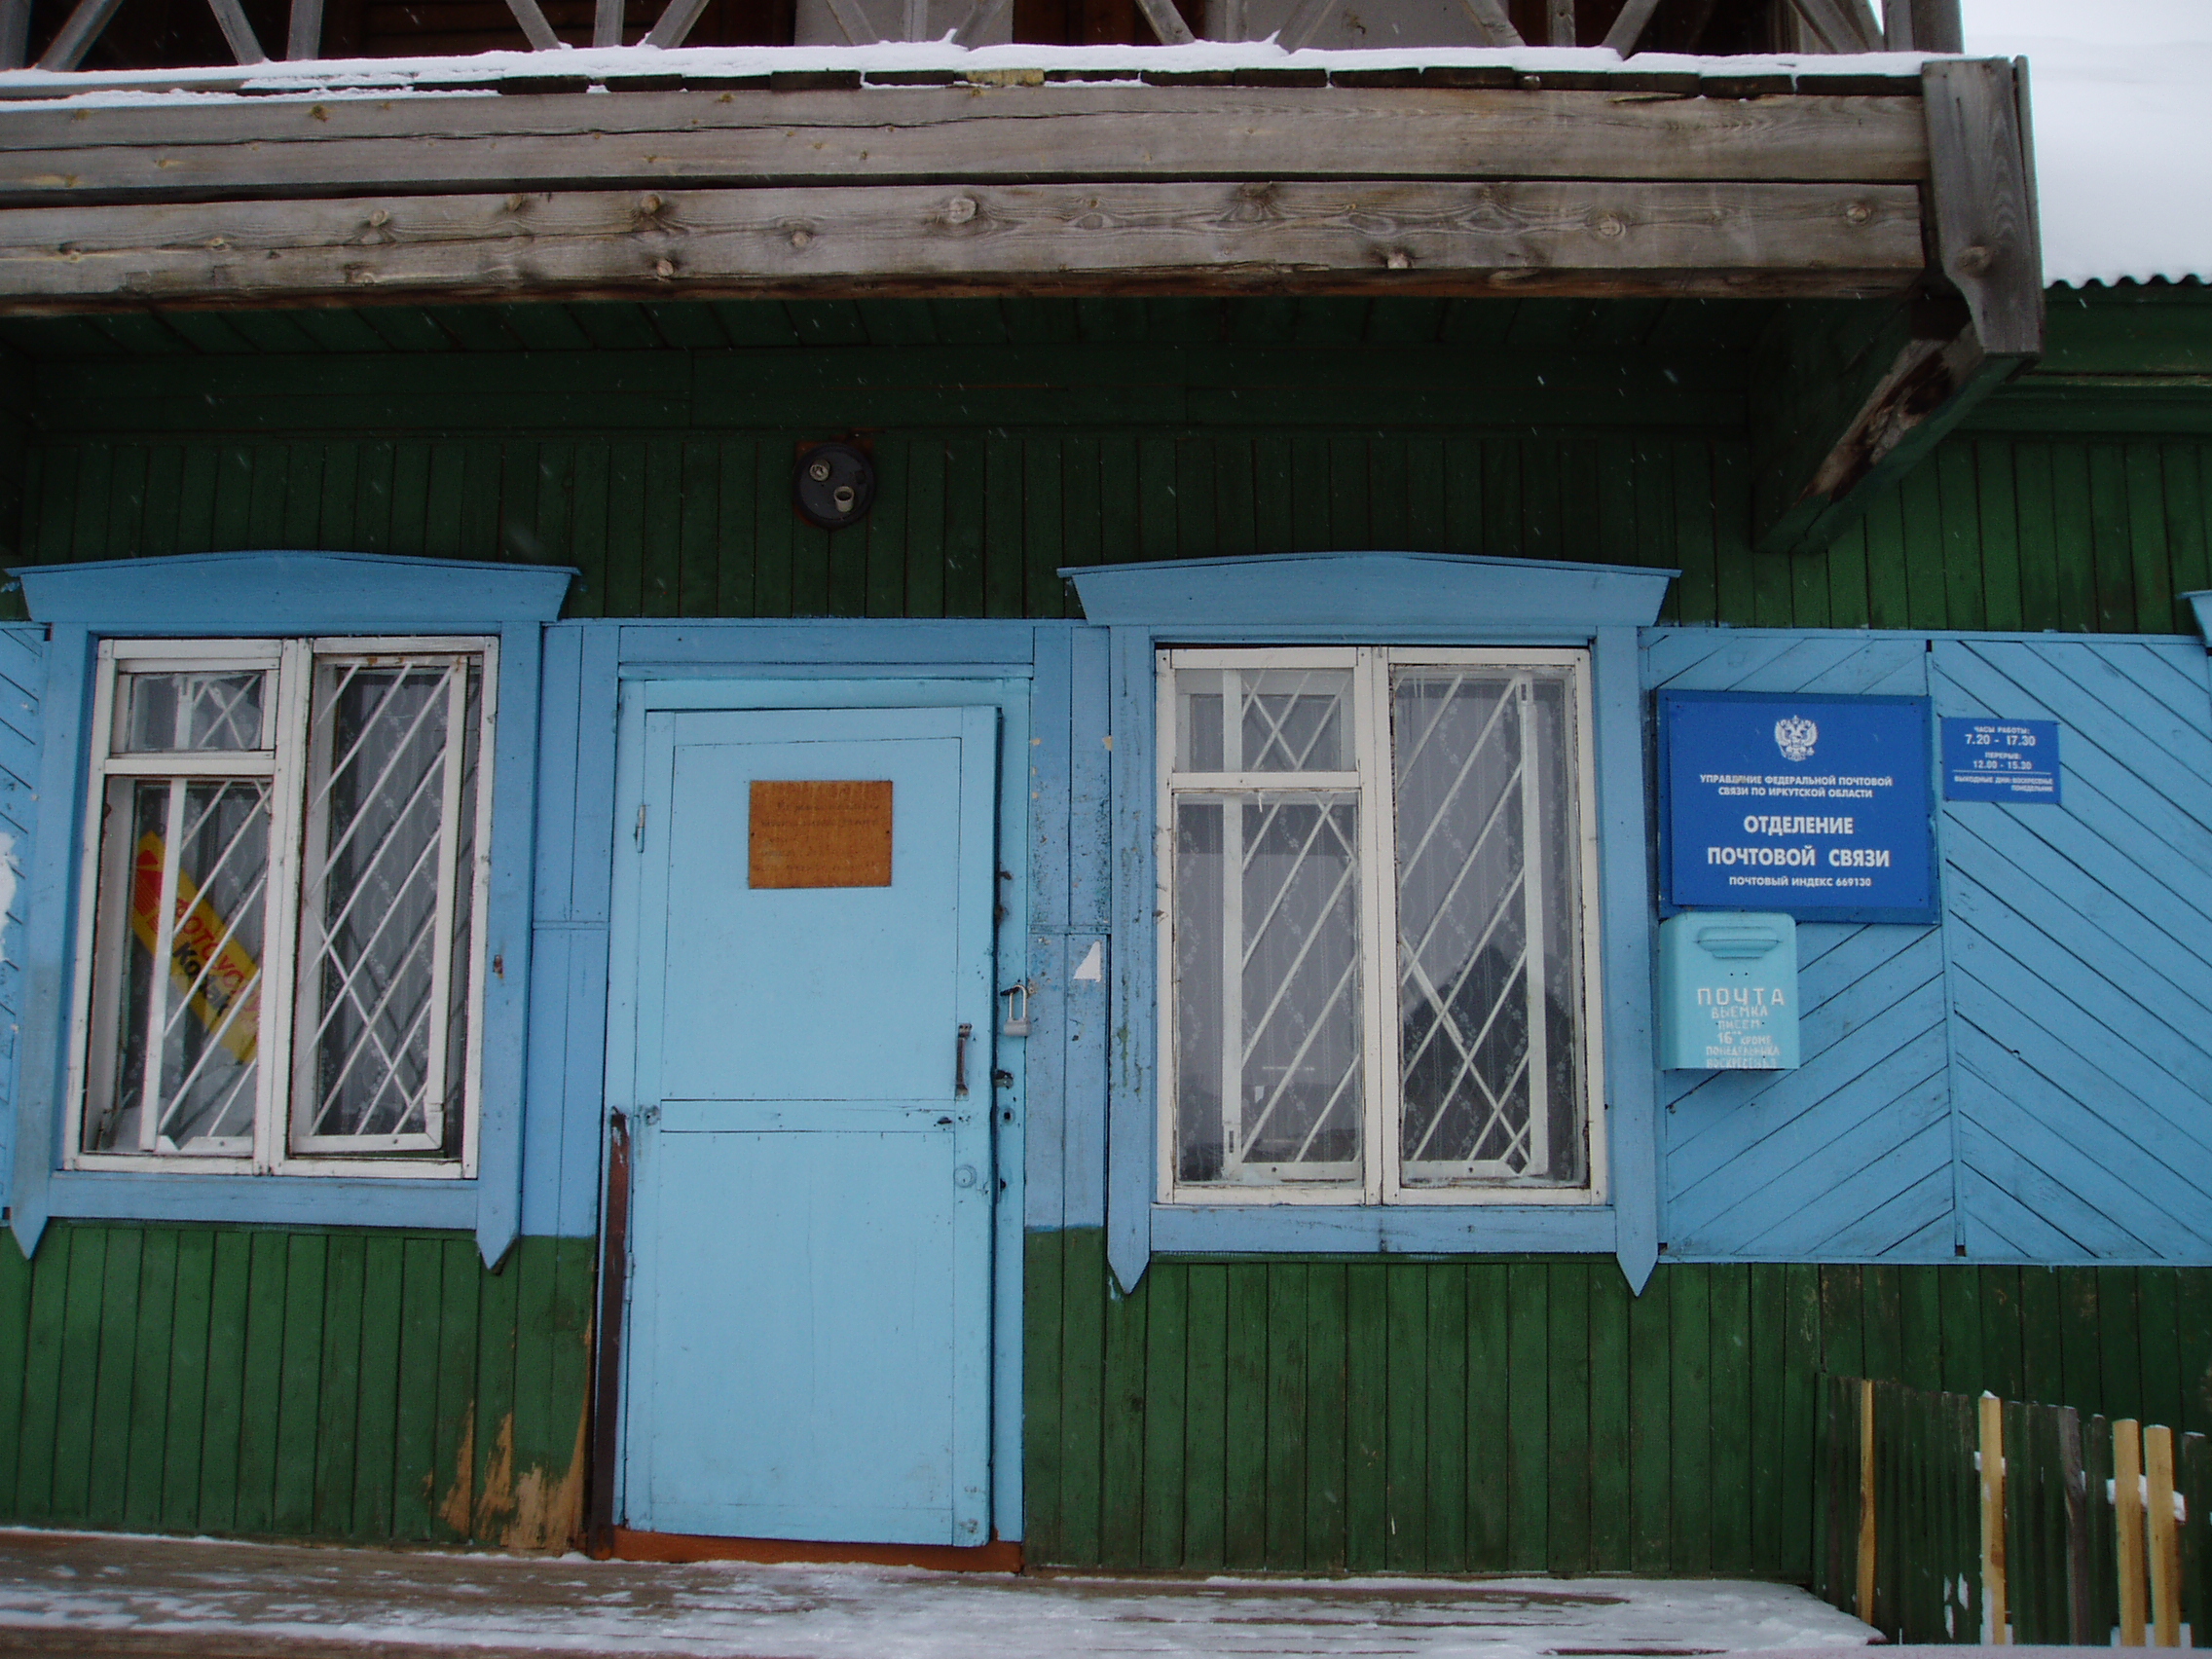 ФАСАД, отделение почтовой связи 669130, Иркутская обл., Усть-Ордынский Бурятский окр.